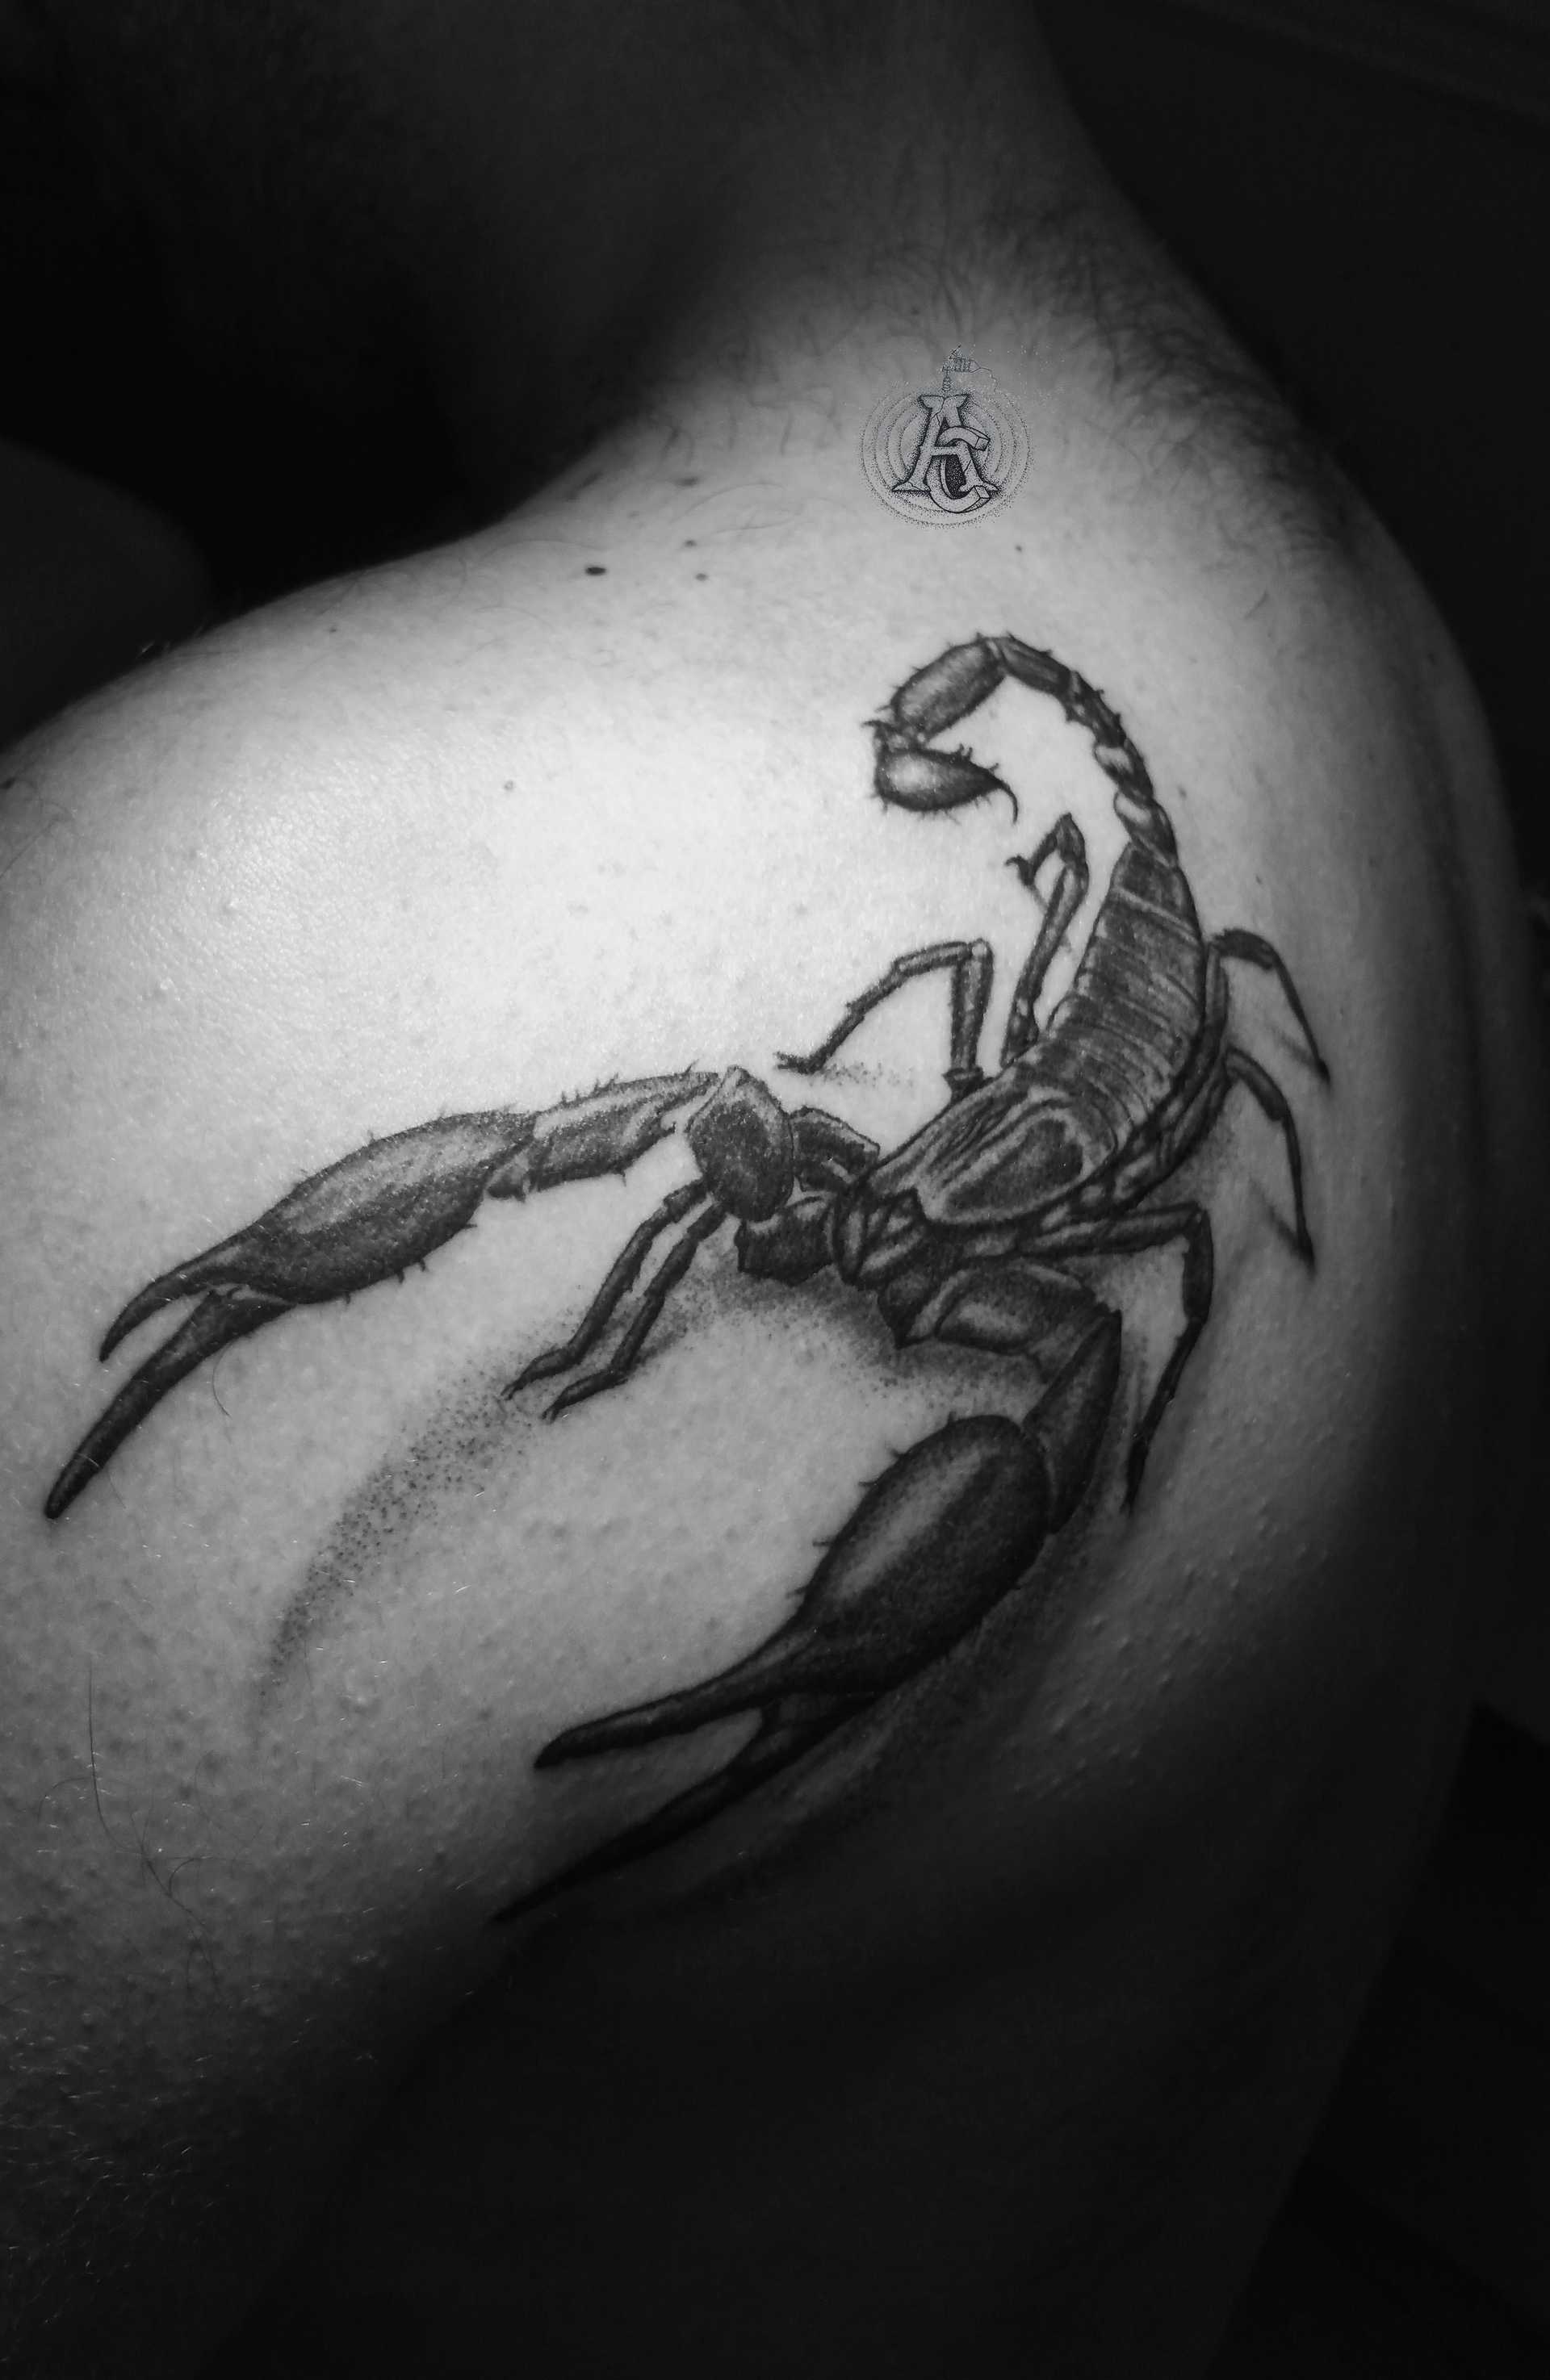 Scorpion (1)